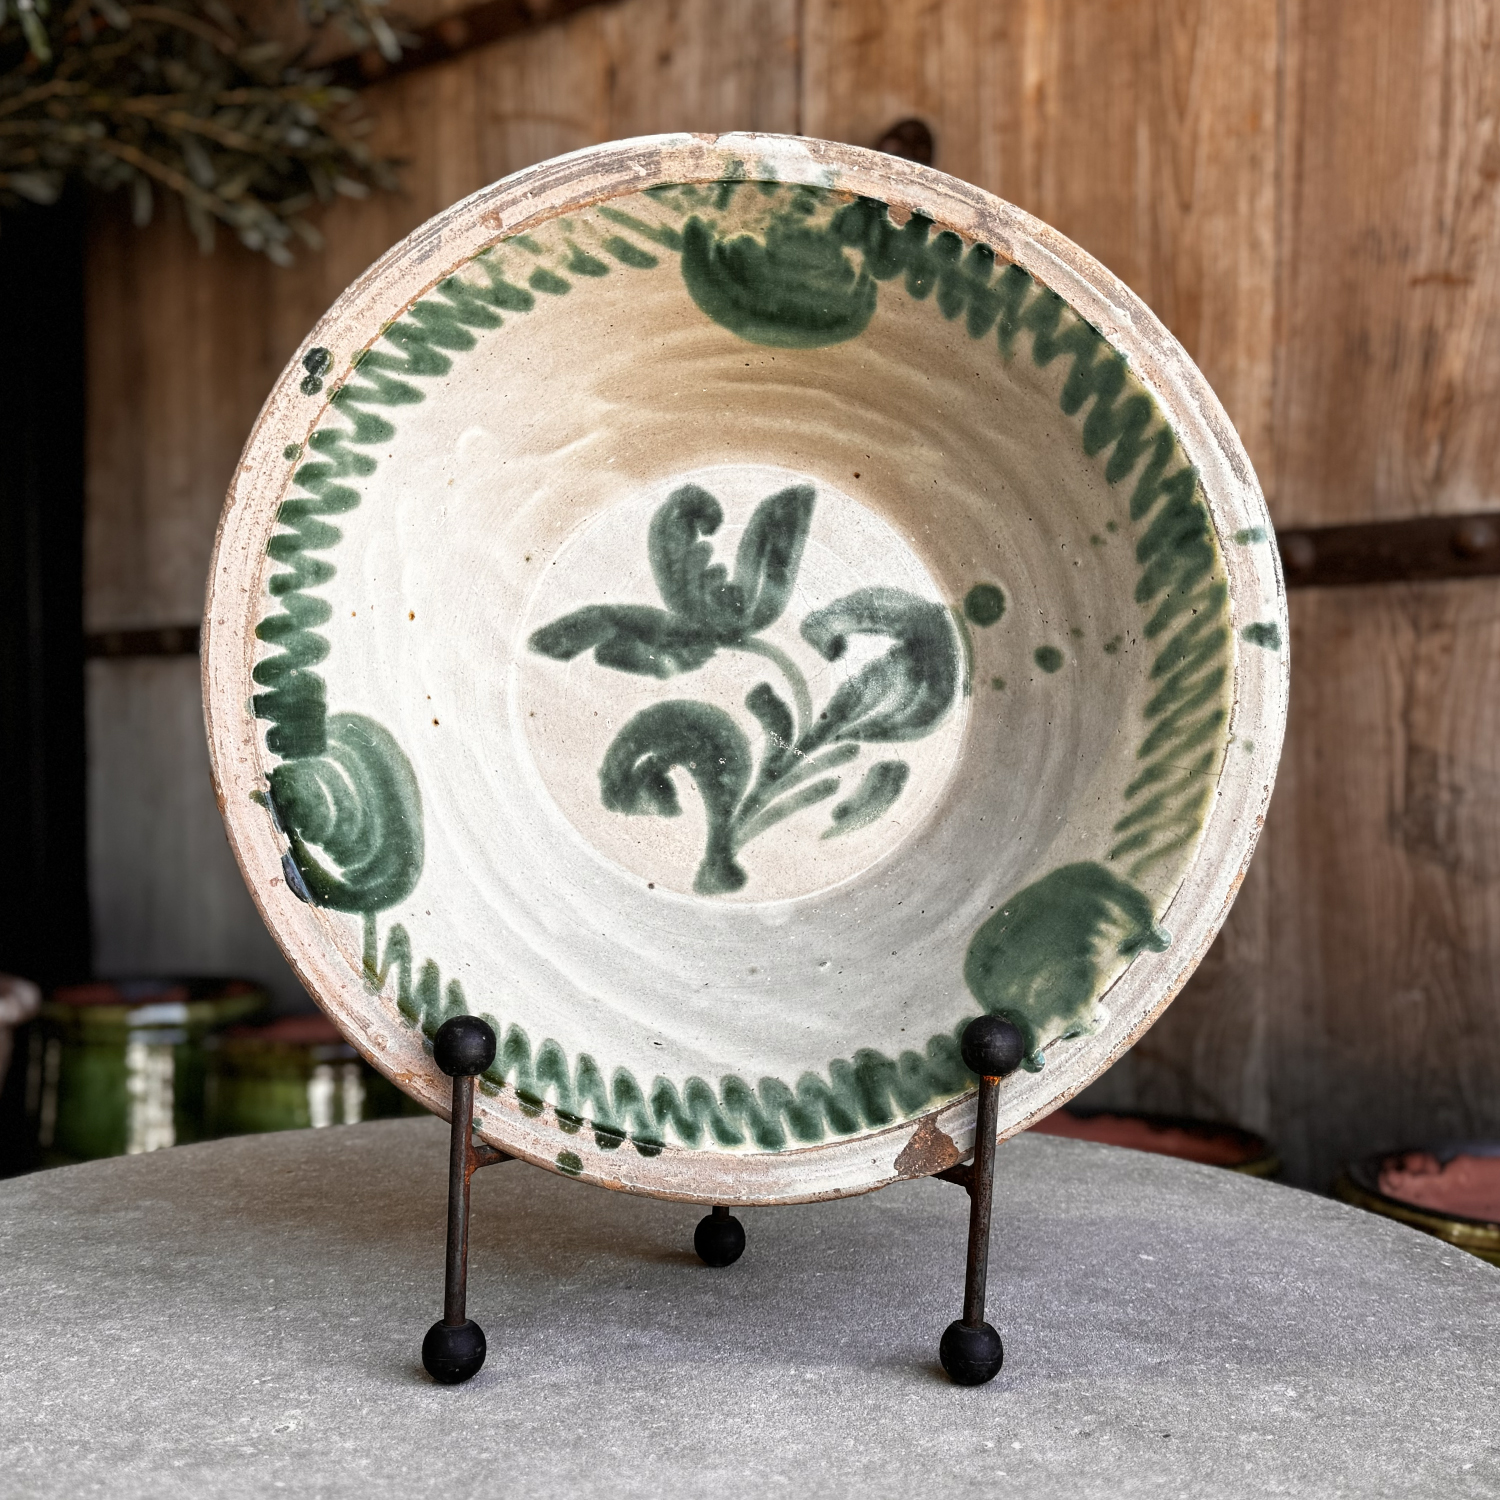 Antique Spanish Lebrillo Ceramic Bowl